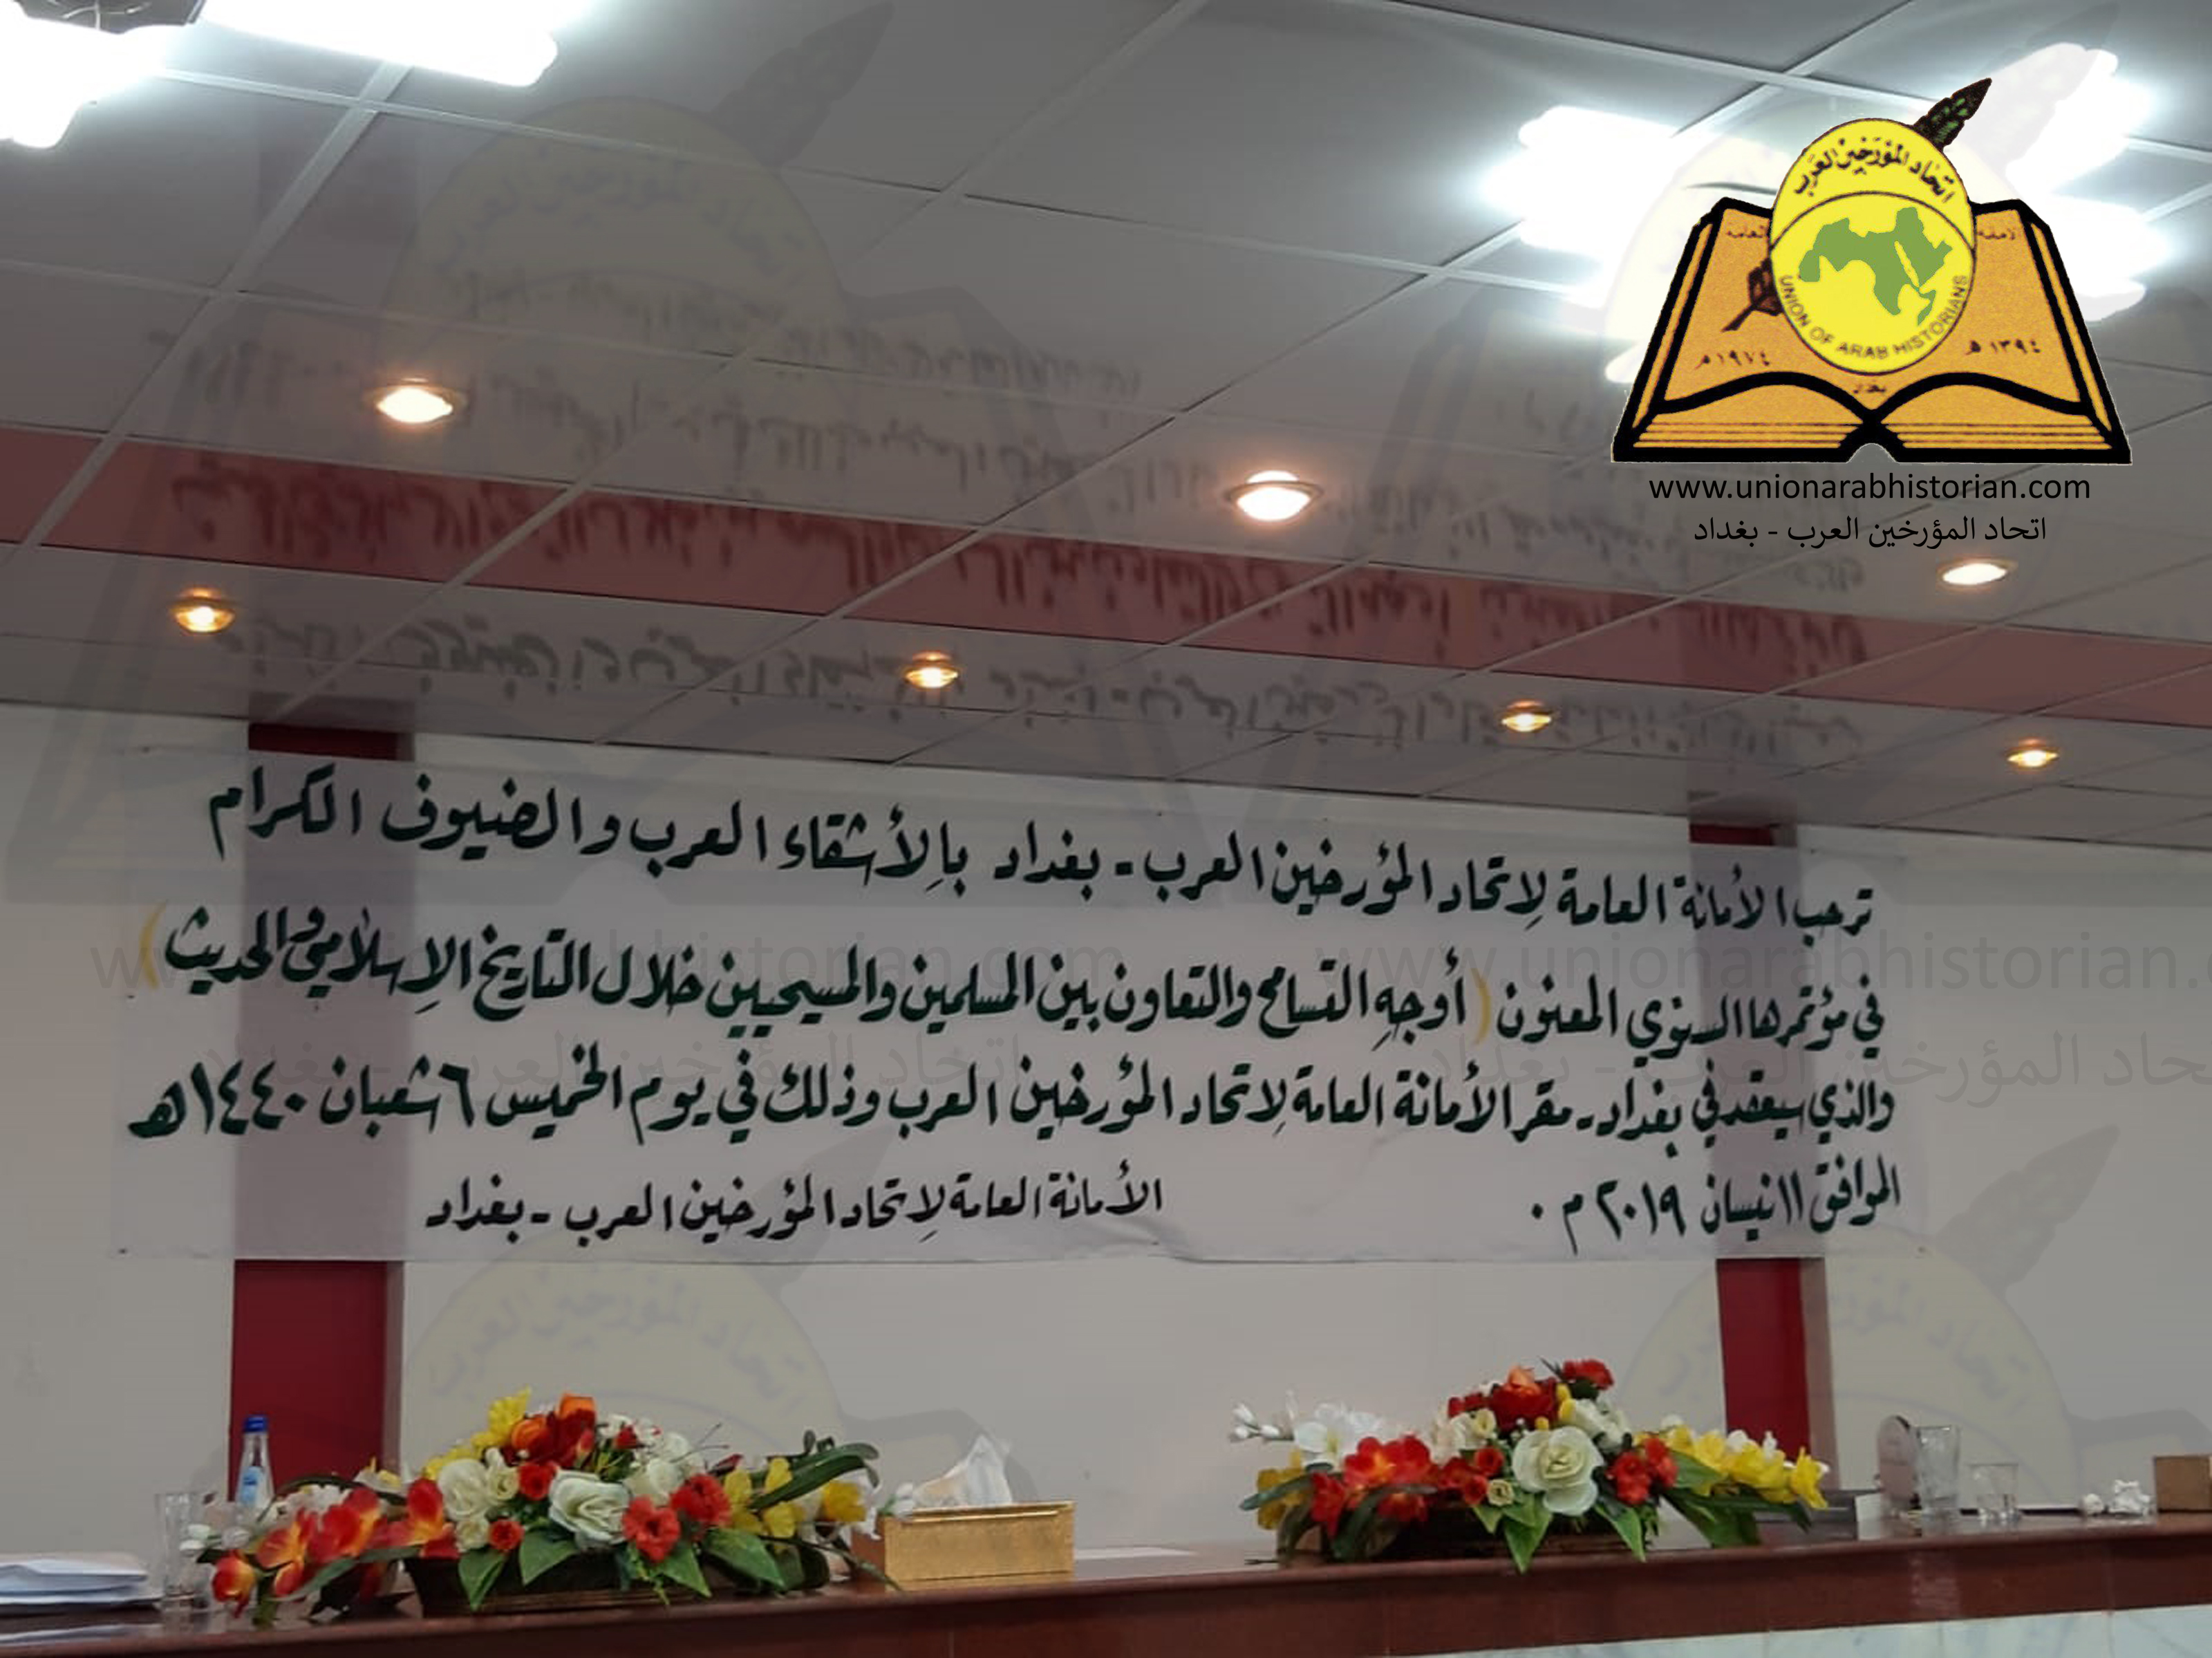 اتحاد المؤرخين العرب في بغداد يقيم مؤتمره السنوي: أوجه التسامح والتعاون بين المسلمين والمسيحيين خلال التاريخ الإسلامي والحديث